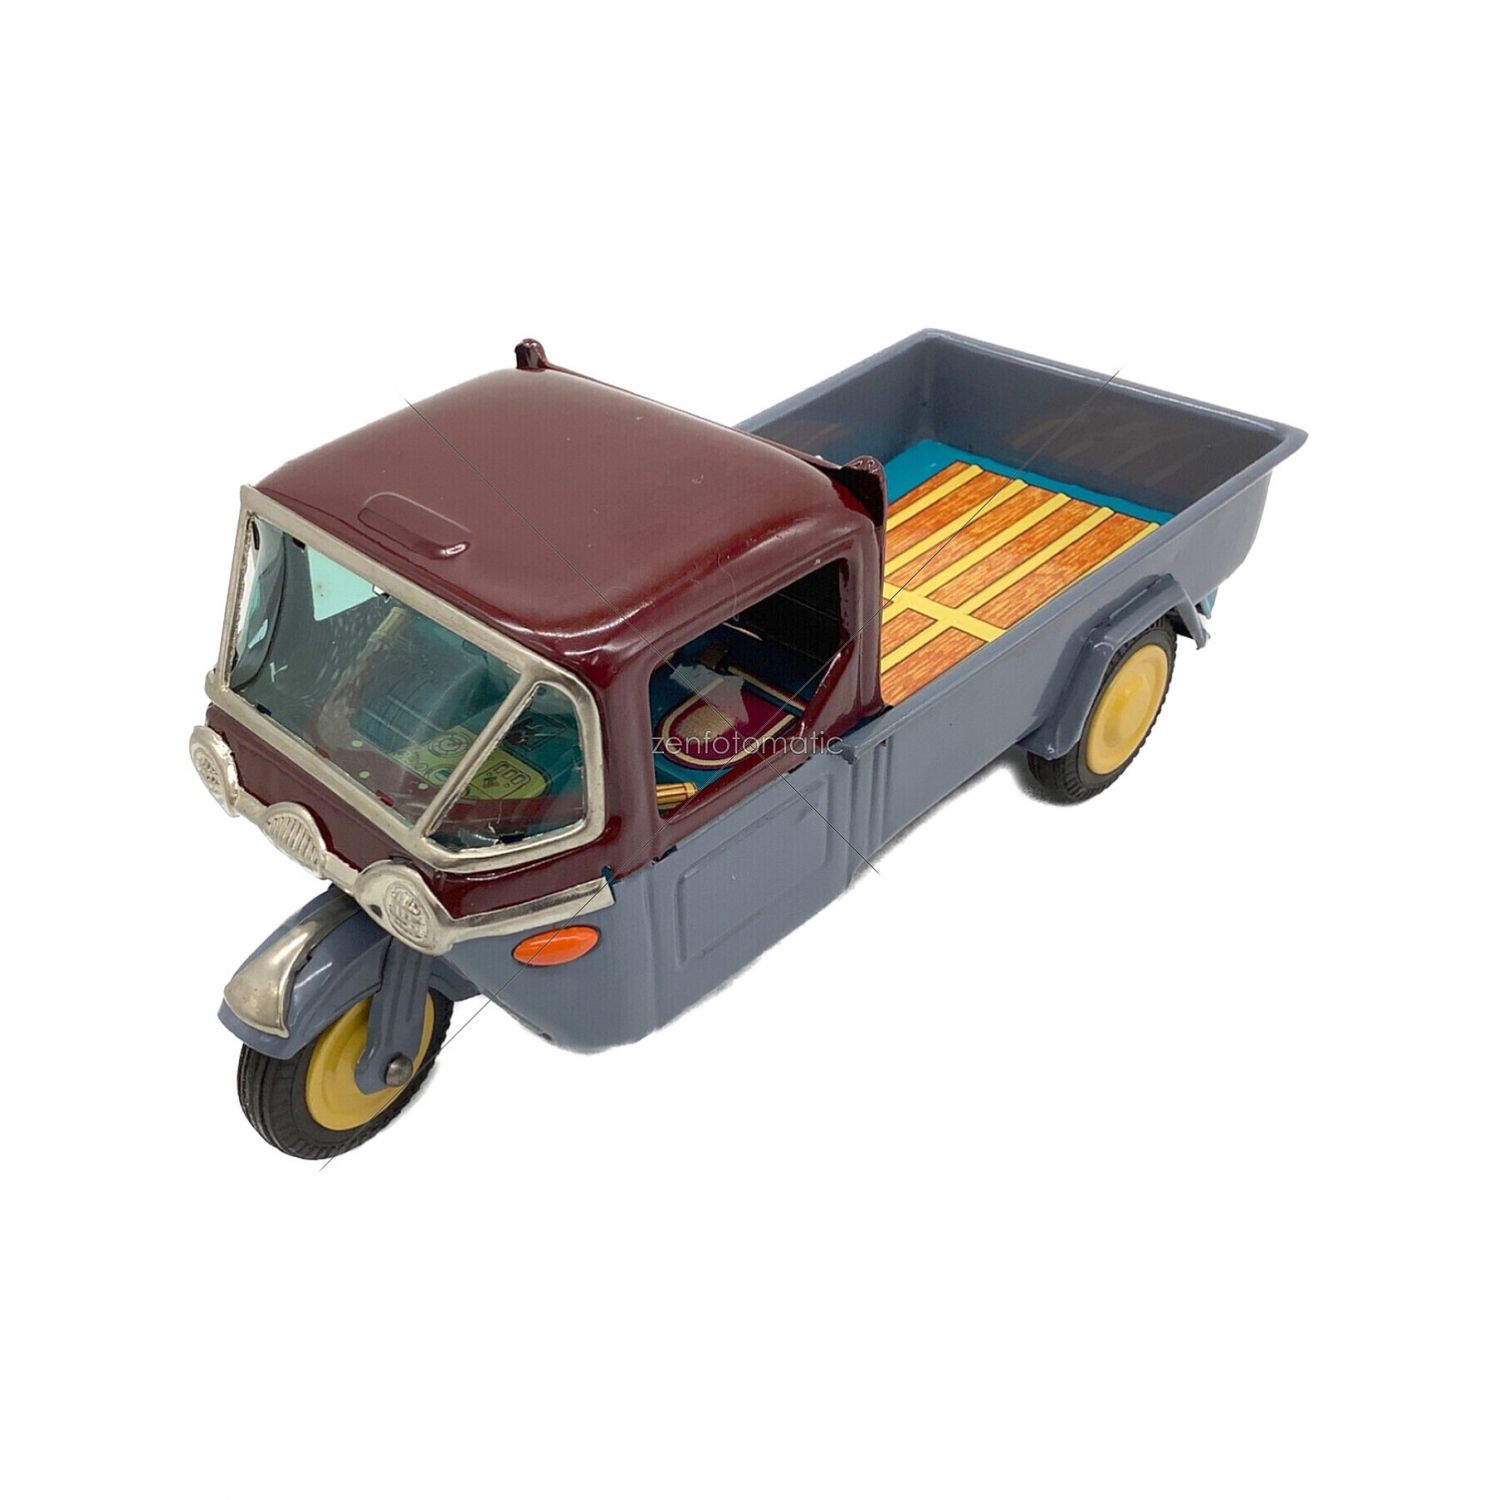 マツダバーハンドル型マツダ三輪トラック保証玩具